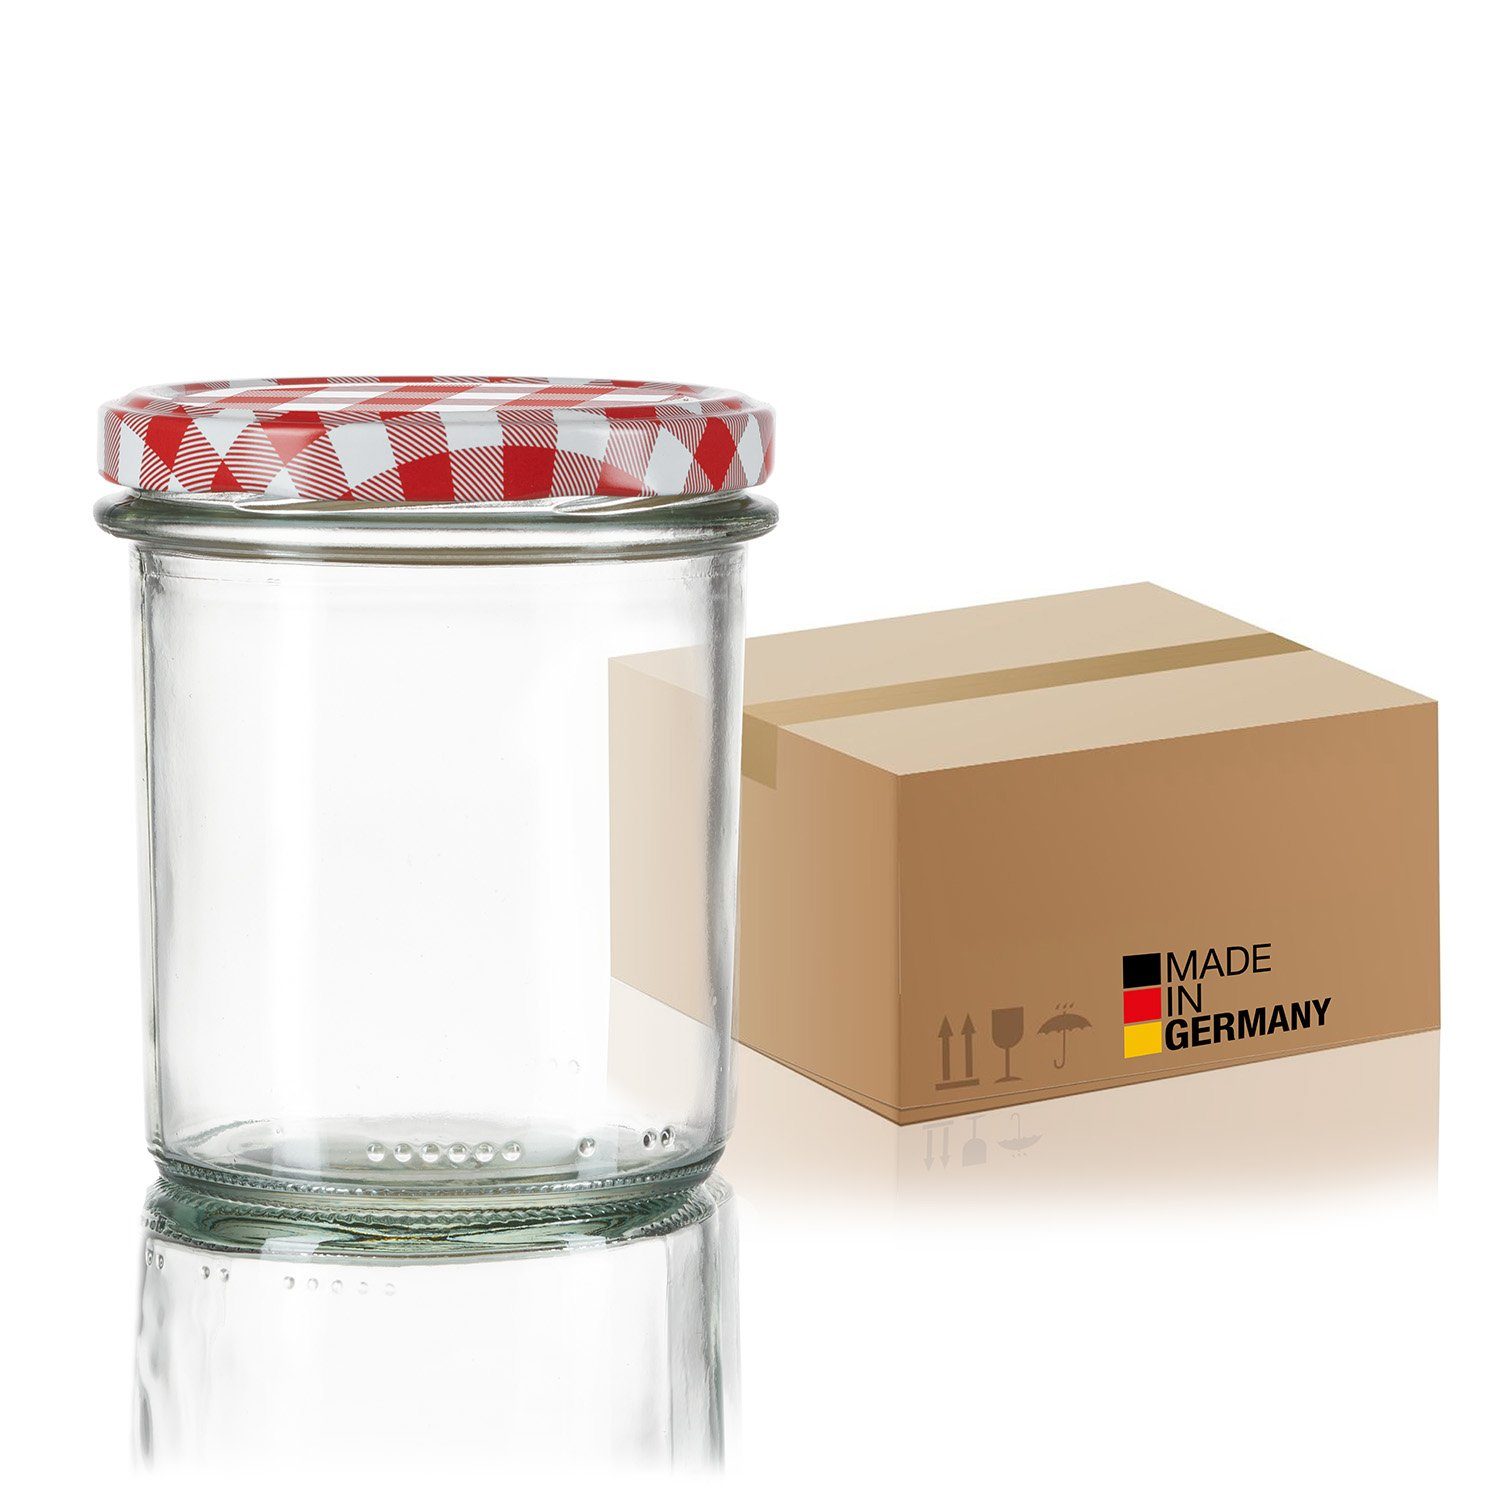 BigDean Einmachglas Germany, (12-tlg) Einkochgläser TO 12x Glas, Sturzgläser in 363ml Made 82